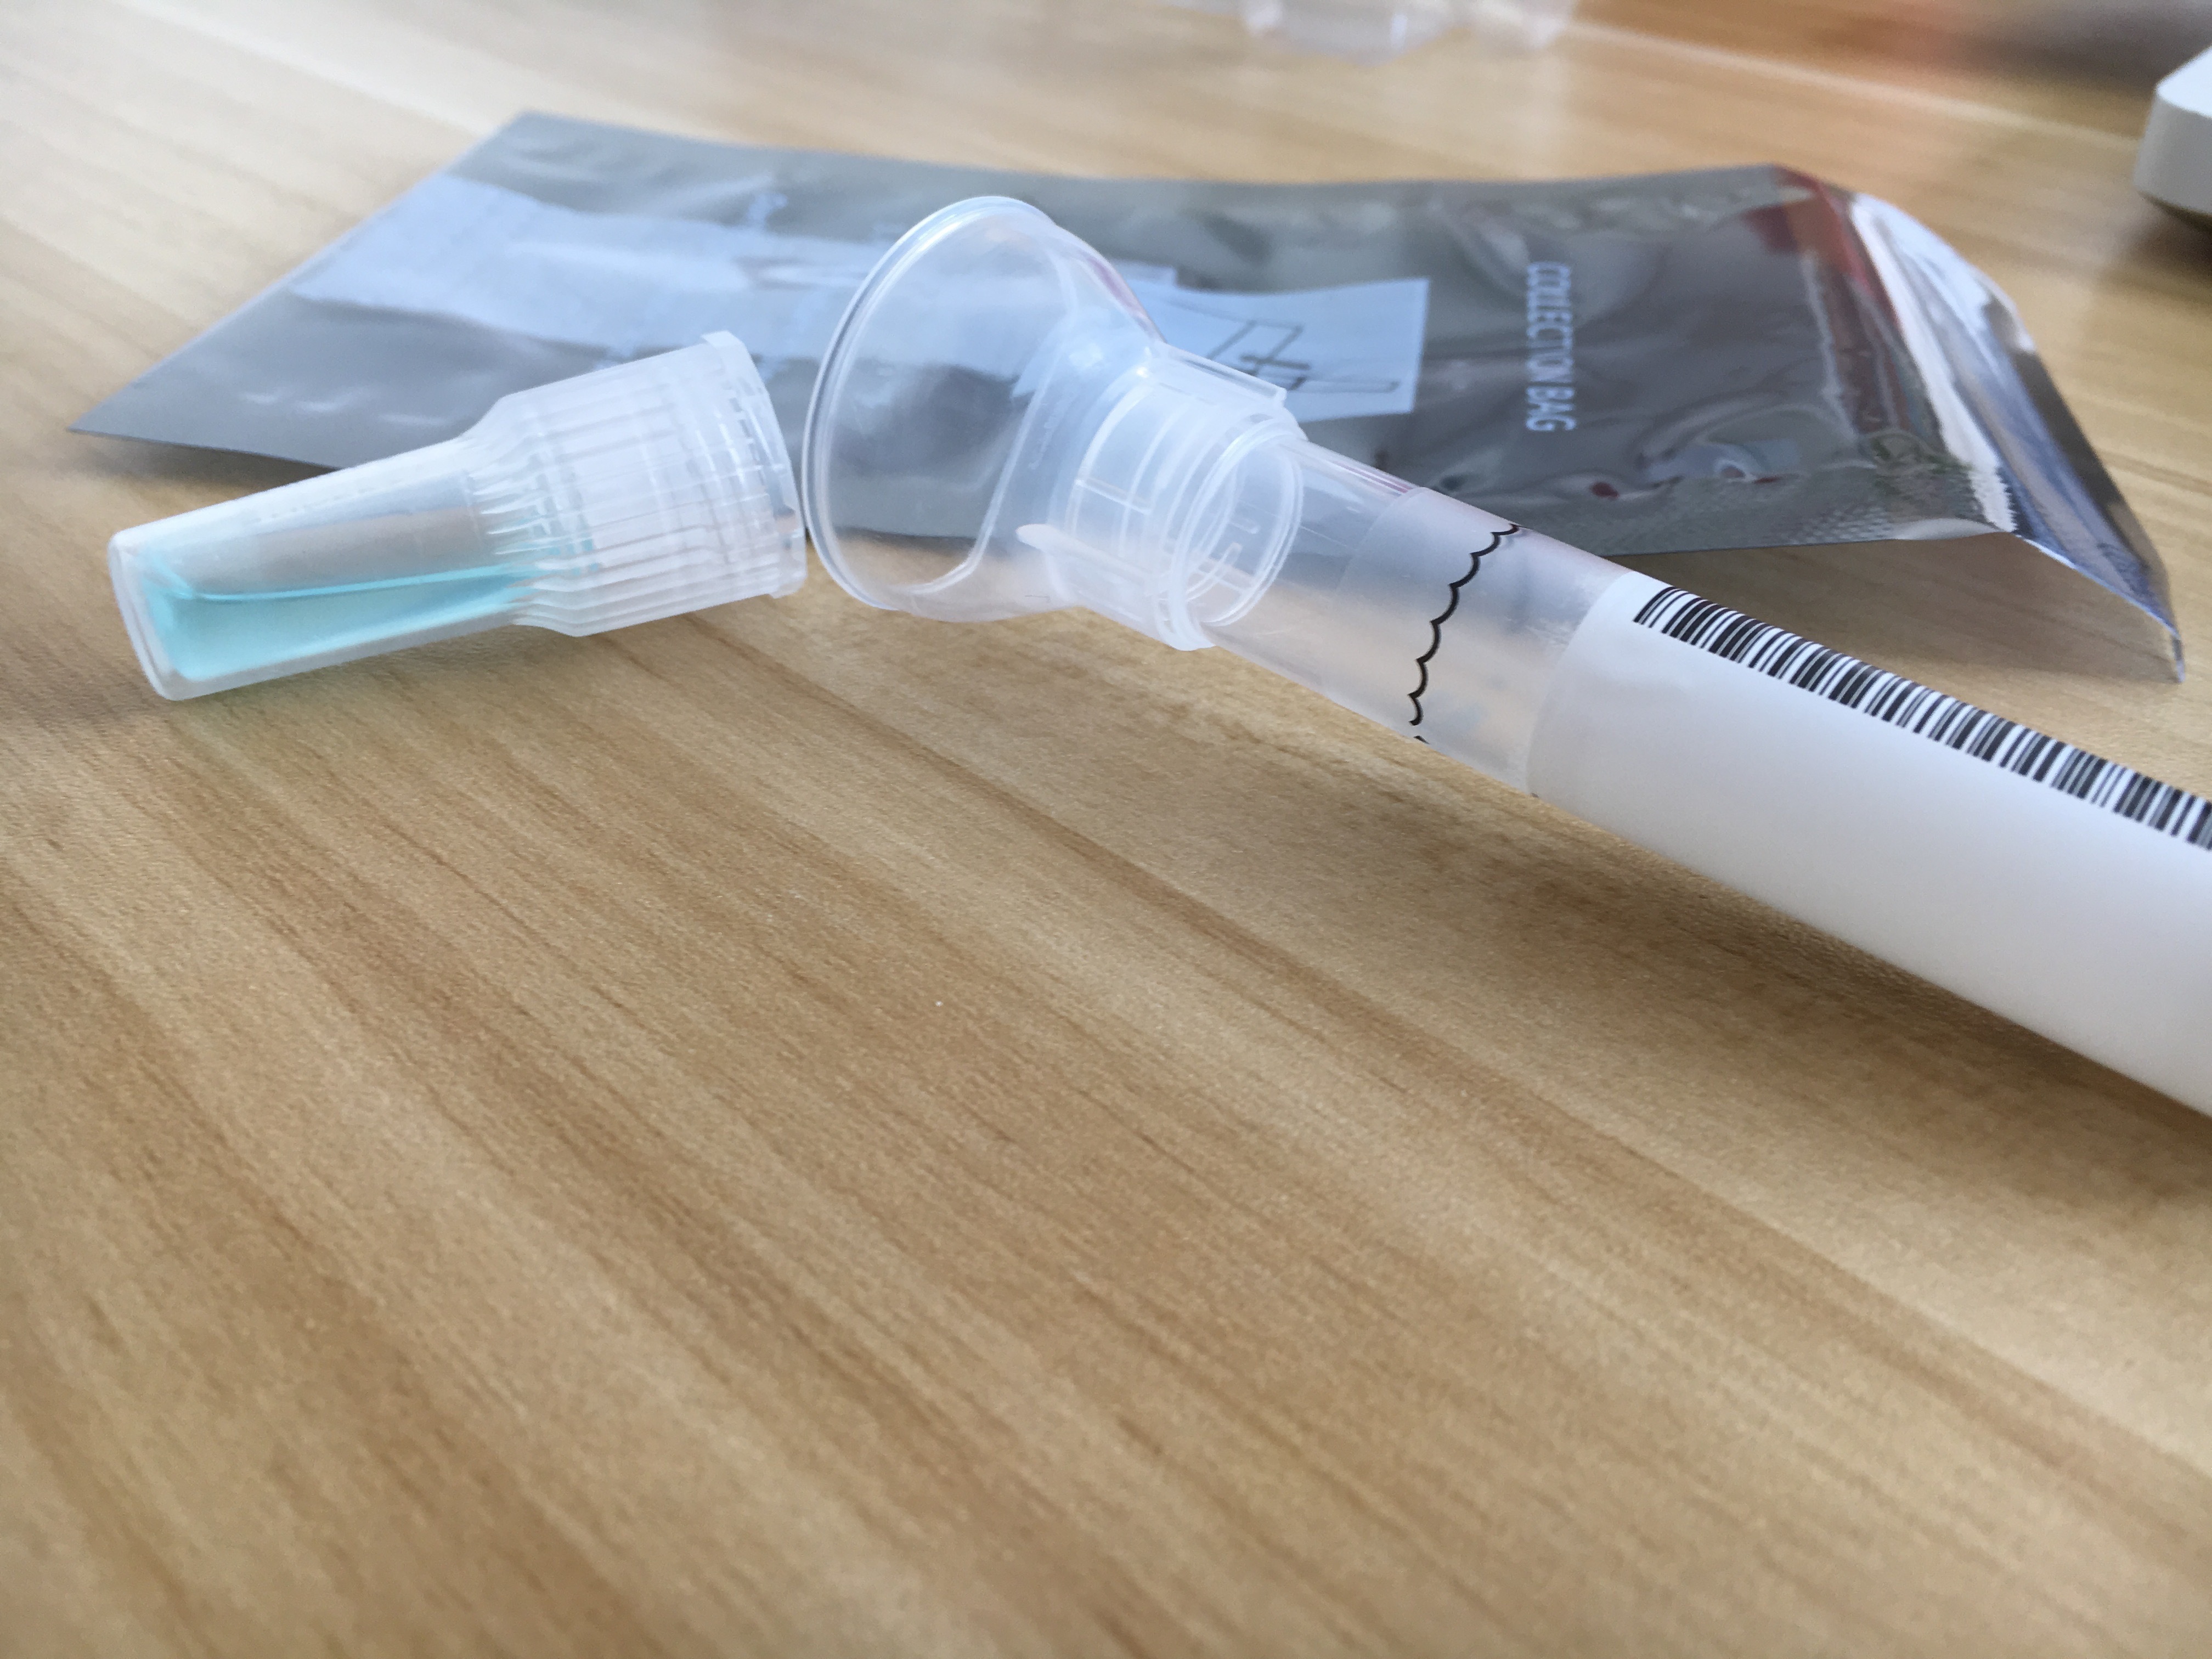 Un kit de prueba de ADN directo al consumidor. (Shutterstock)